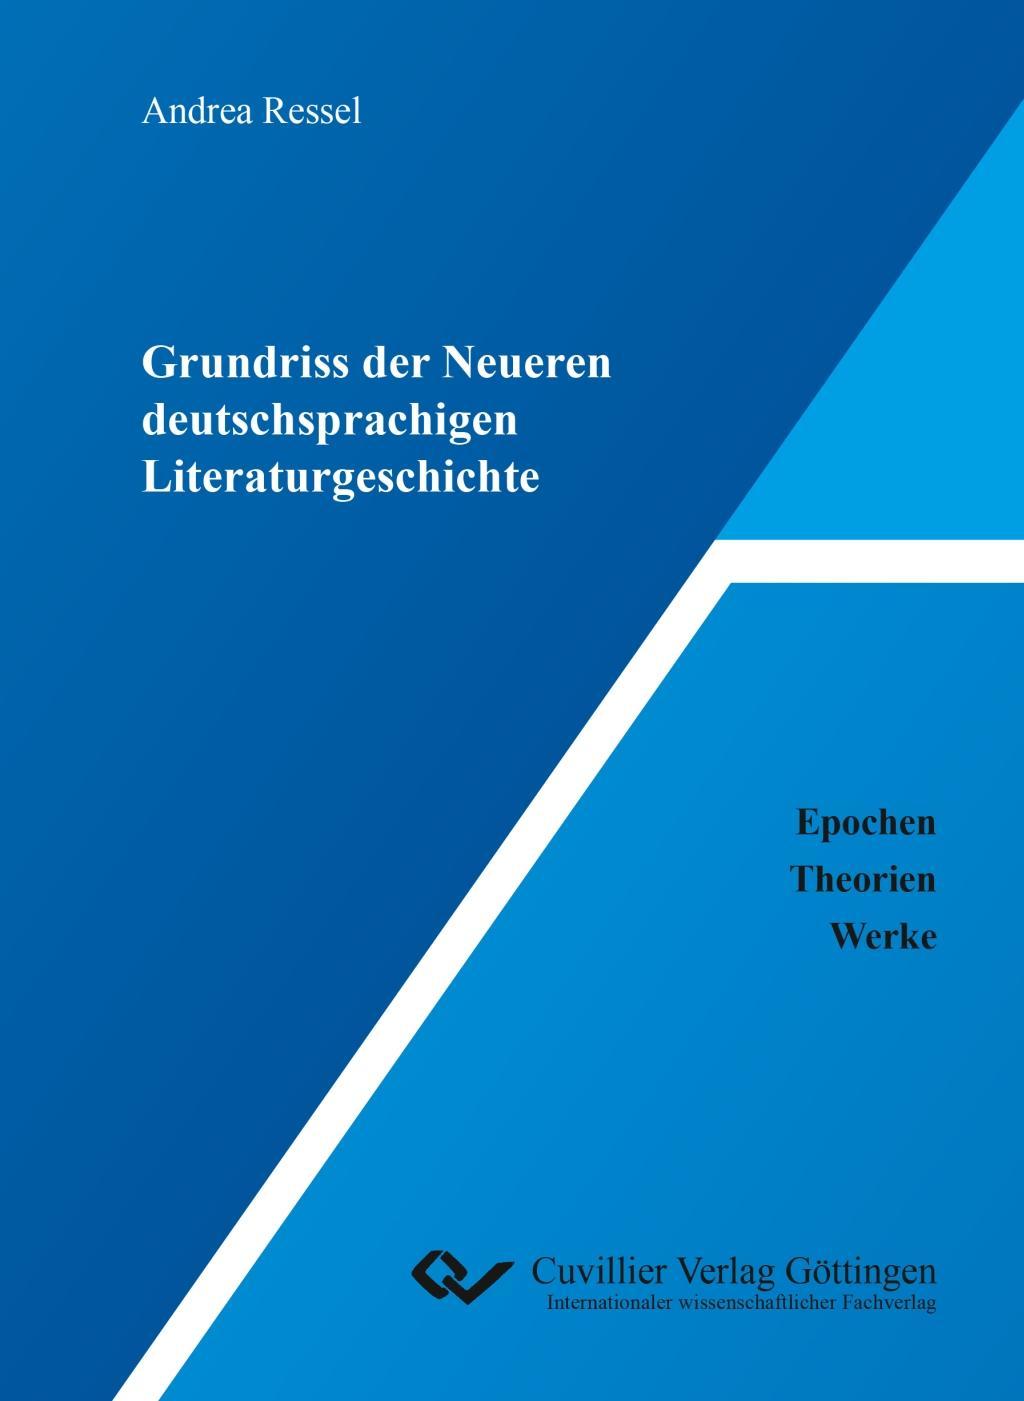 Carte Lehr- und Lernbuch Germanistik. Band 1: Literaturwissenschaft Andrea Ressel